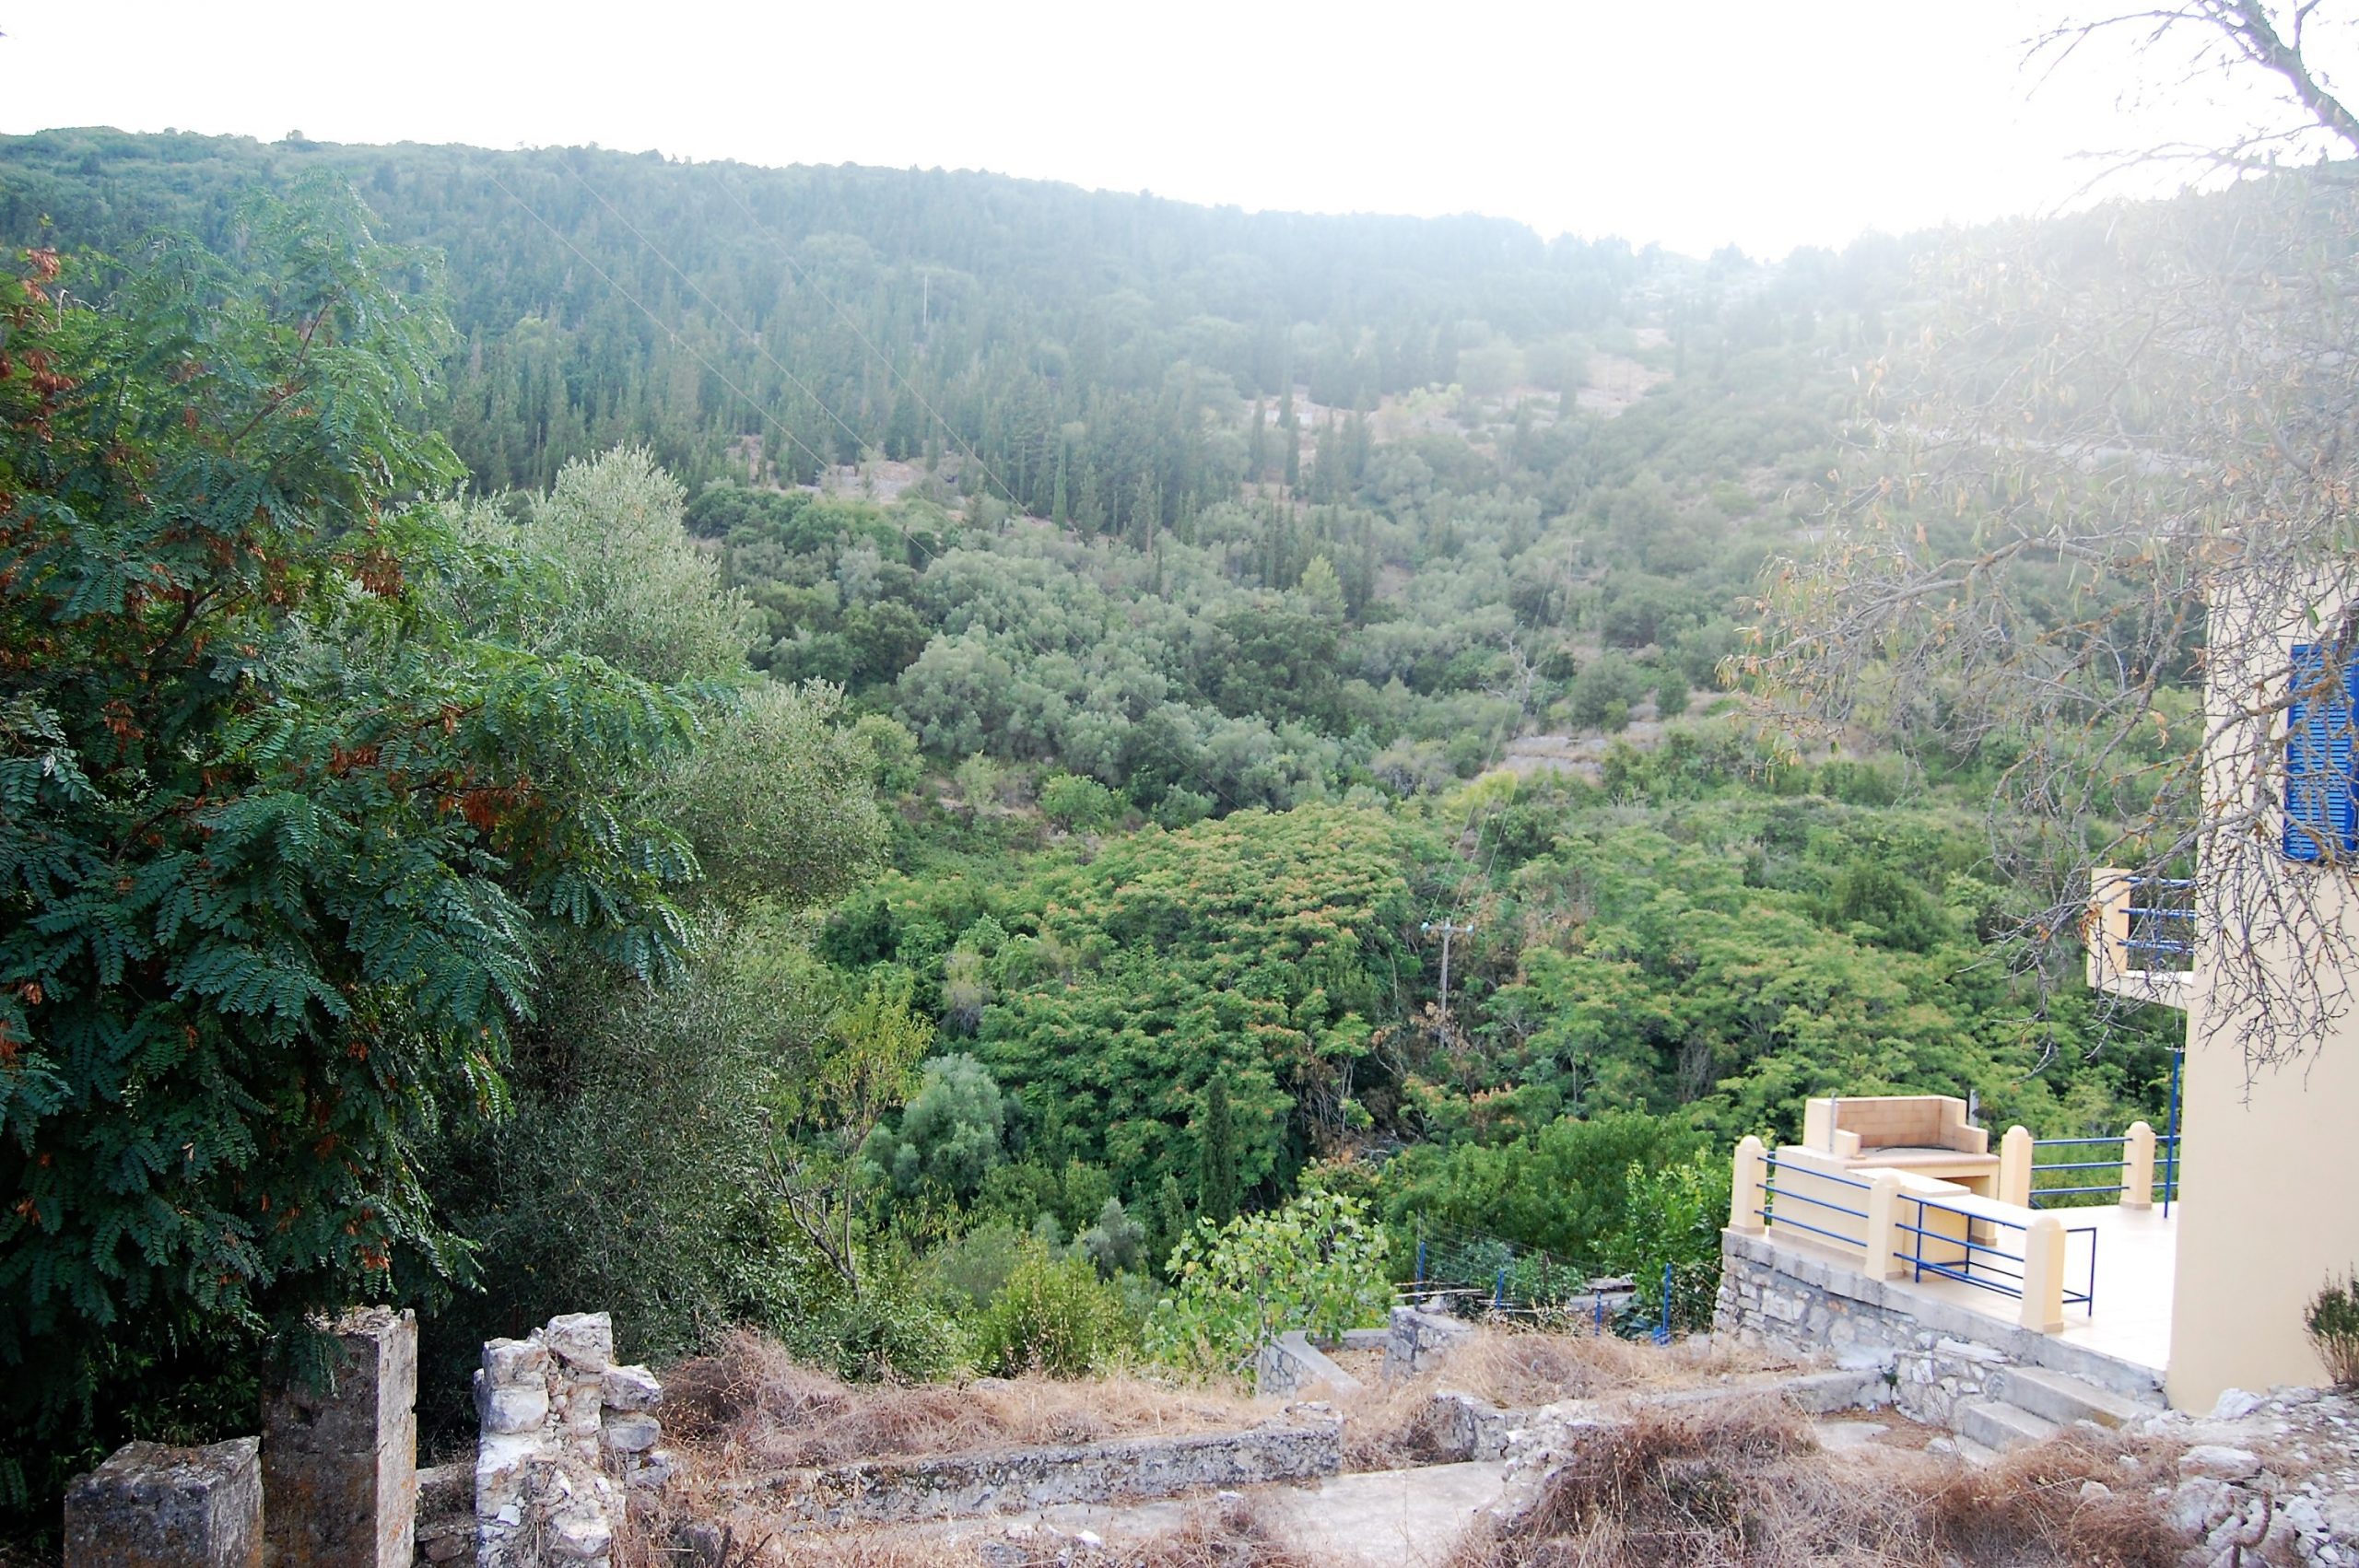 Οικόπεδο προς πώληση στην Ιθάκη Ελλάδα με εξωτερική θέα